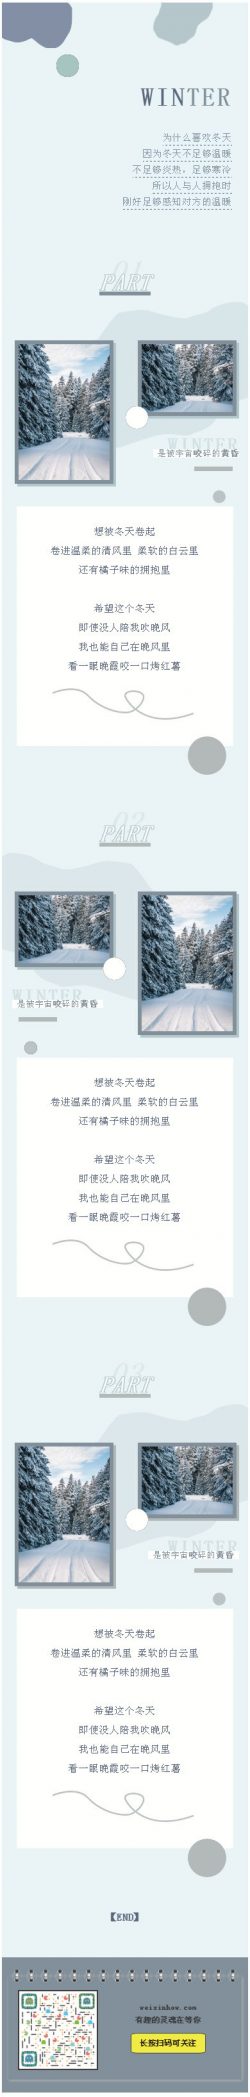 冬天清新冷色风格微信公众号推文模板推送图文微信素材